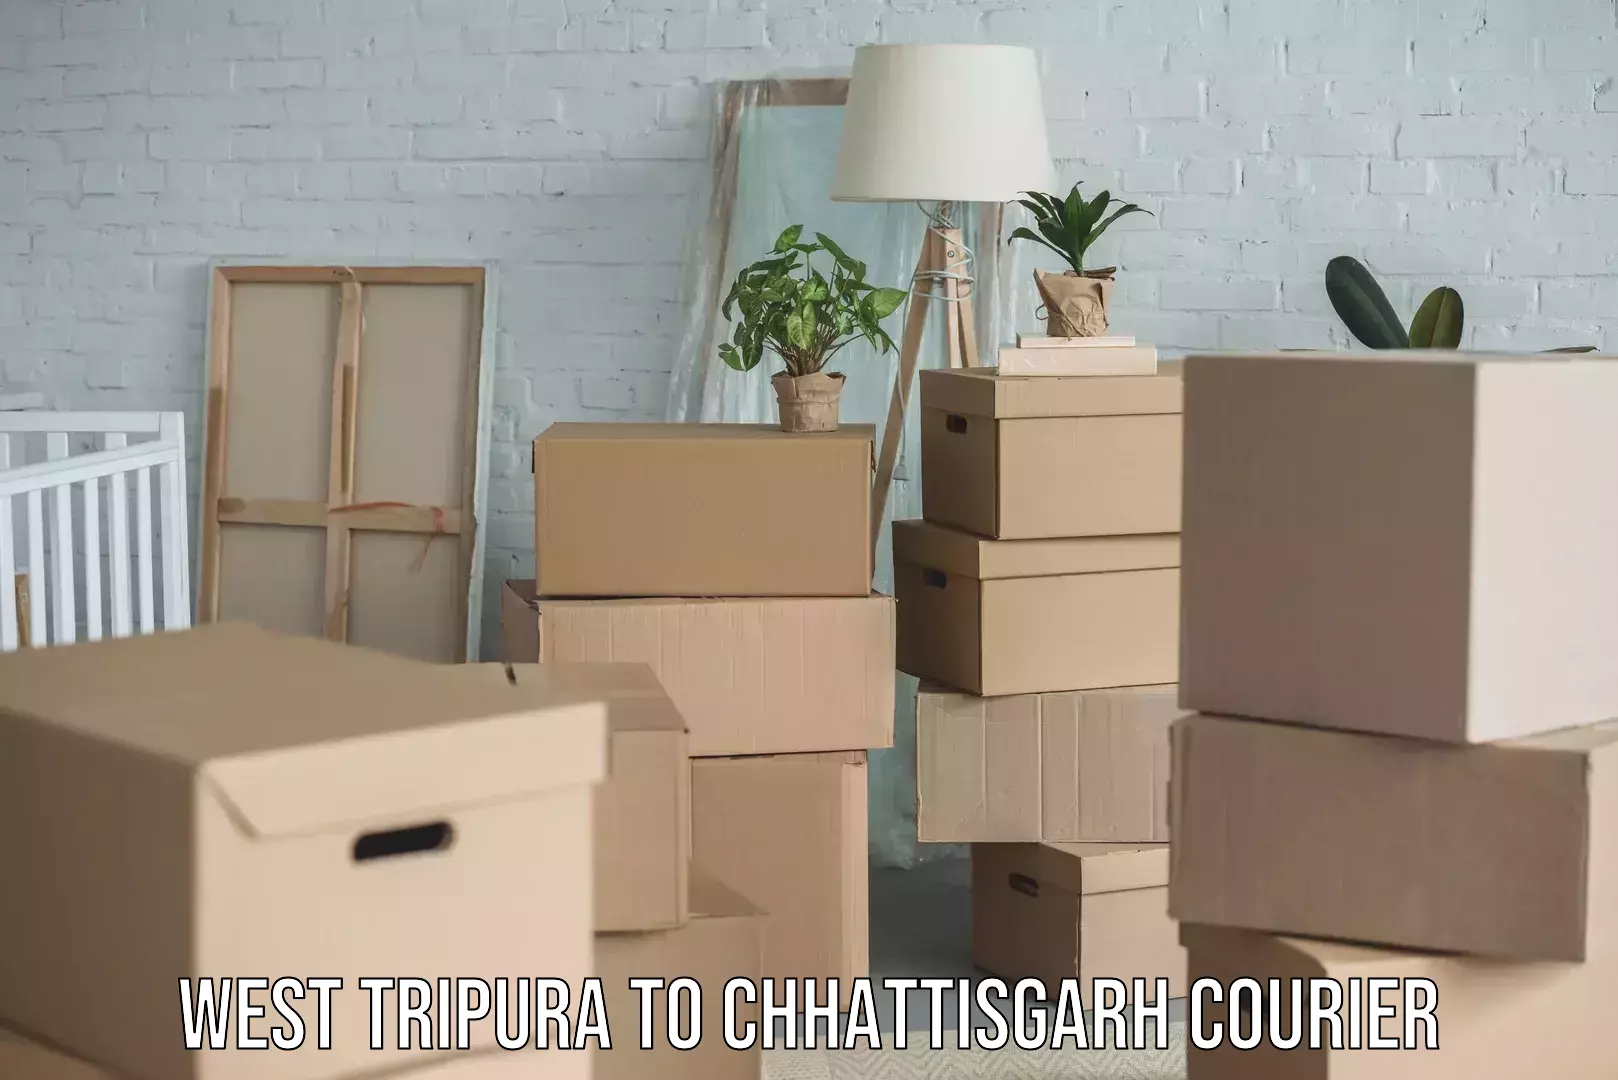 Urgent courier needs West Tripura to Chhattisgarh